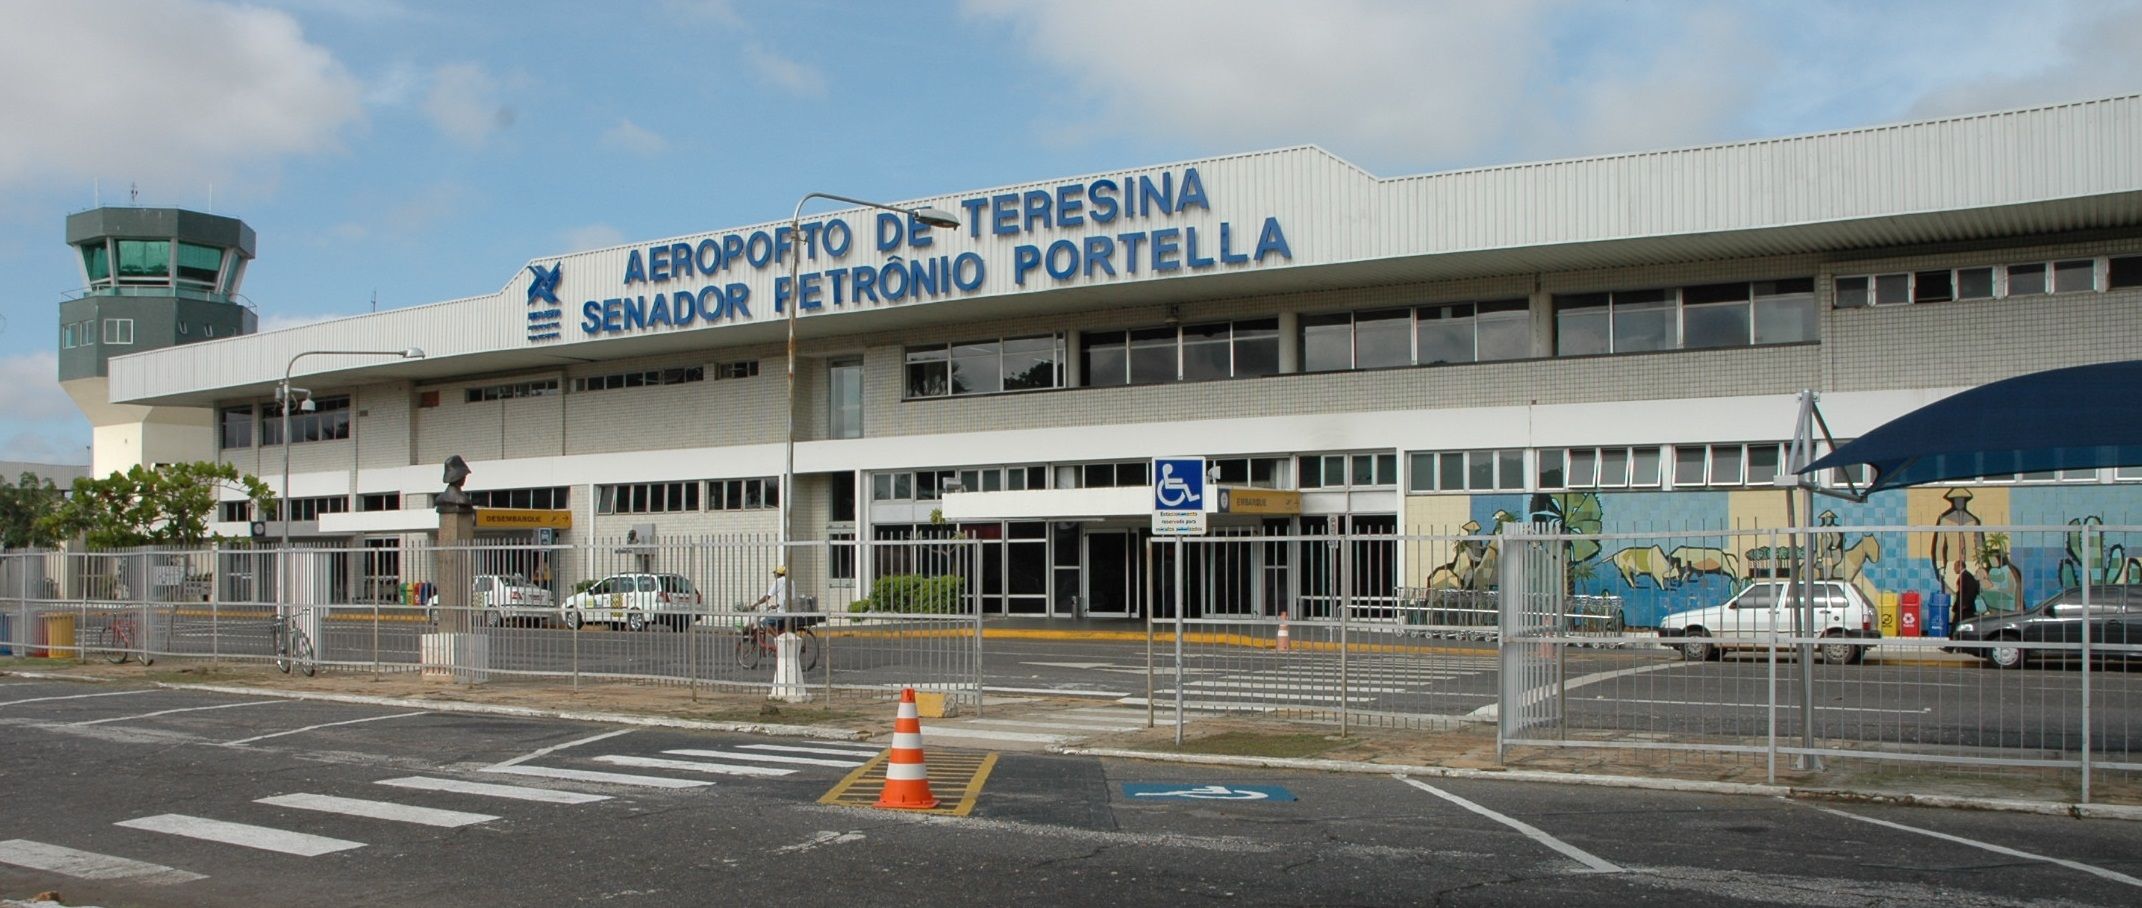 Piloto desvia avião de Teresina para a cidade de Fortaleza por conta do mau tempo